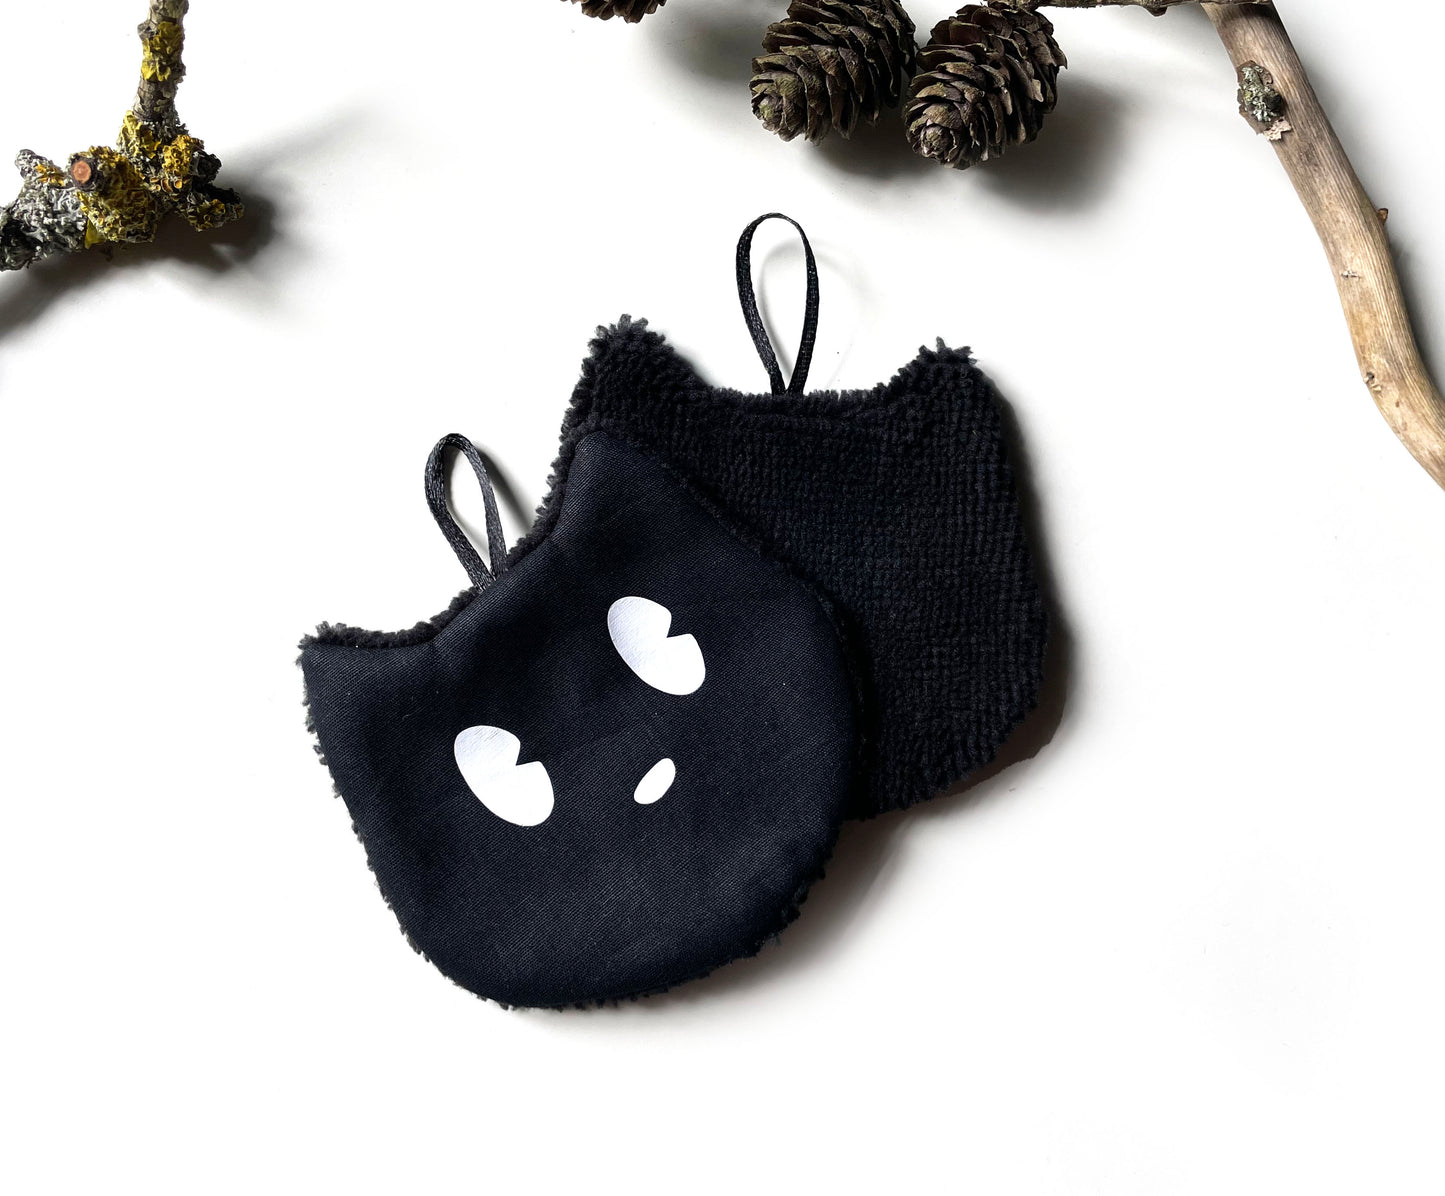 Abschminkpads schwarze Katze waschbare Reinigungspads 2er-Set Bambusfrottee